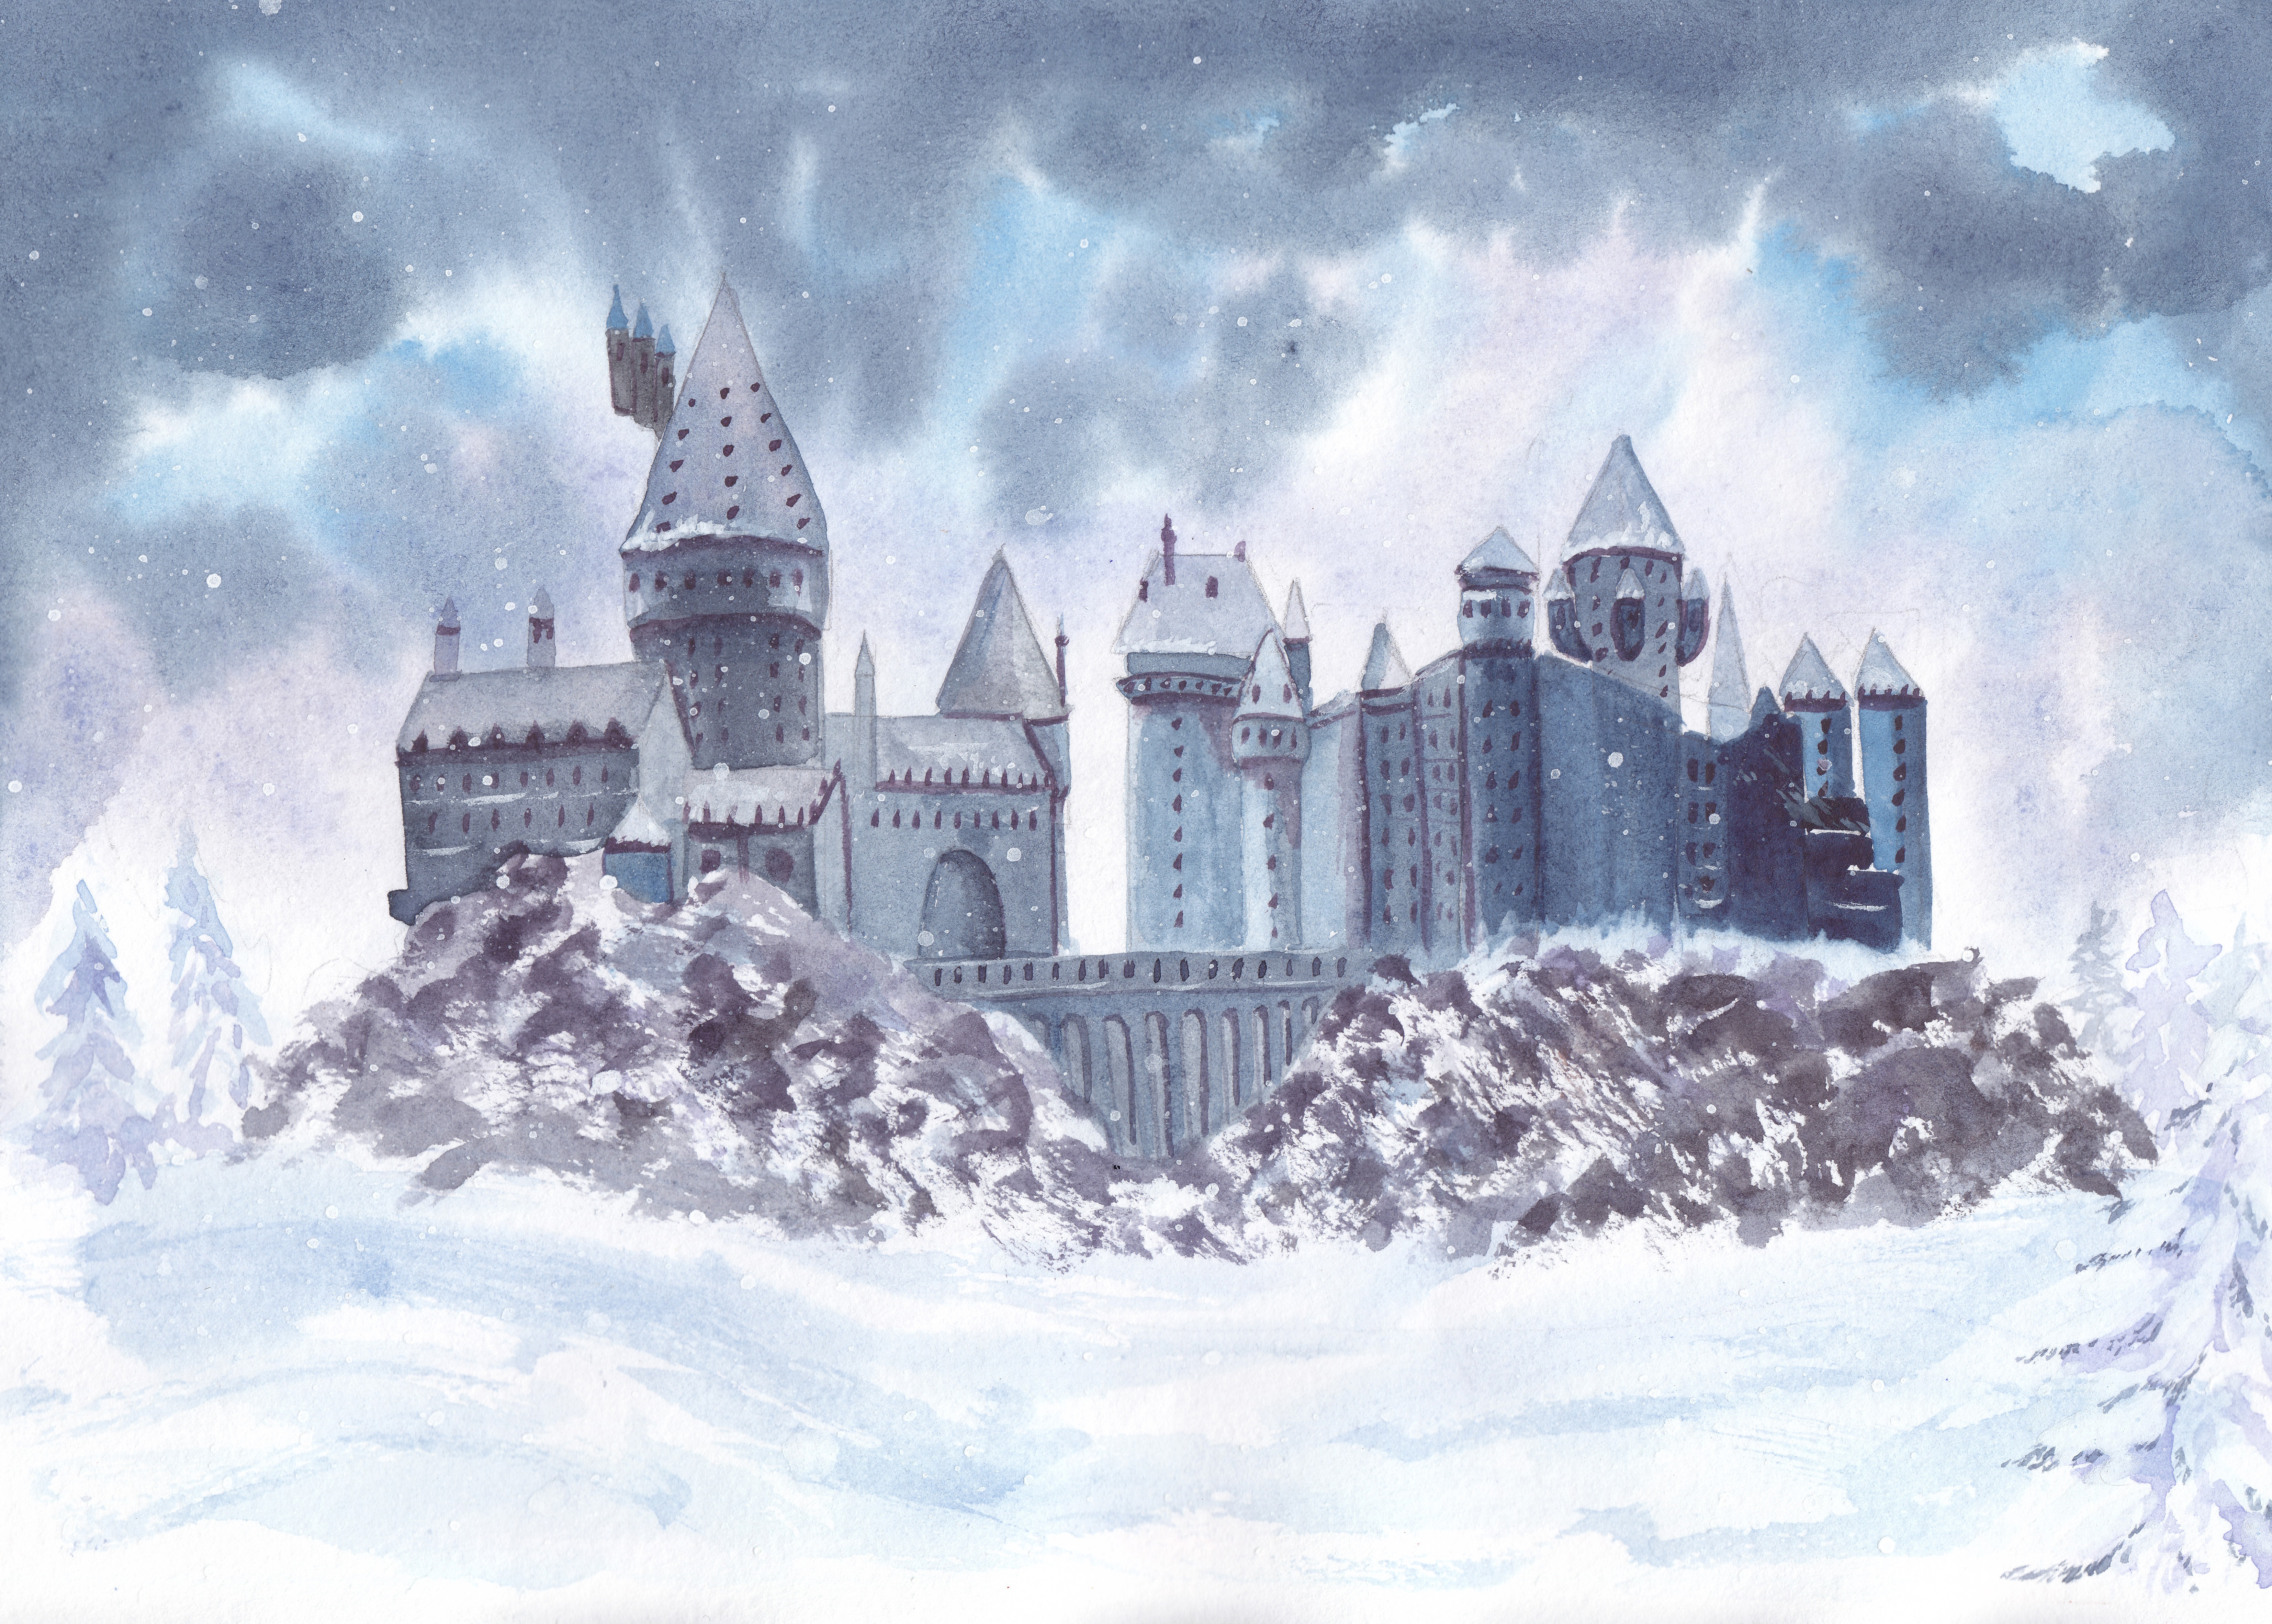 Hogwart's in the winter